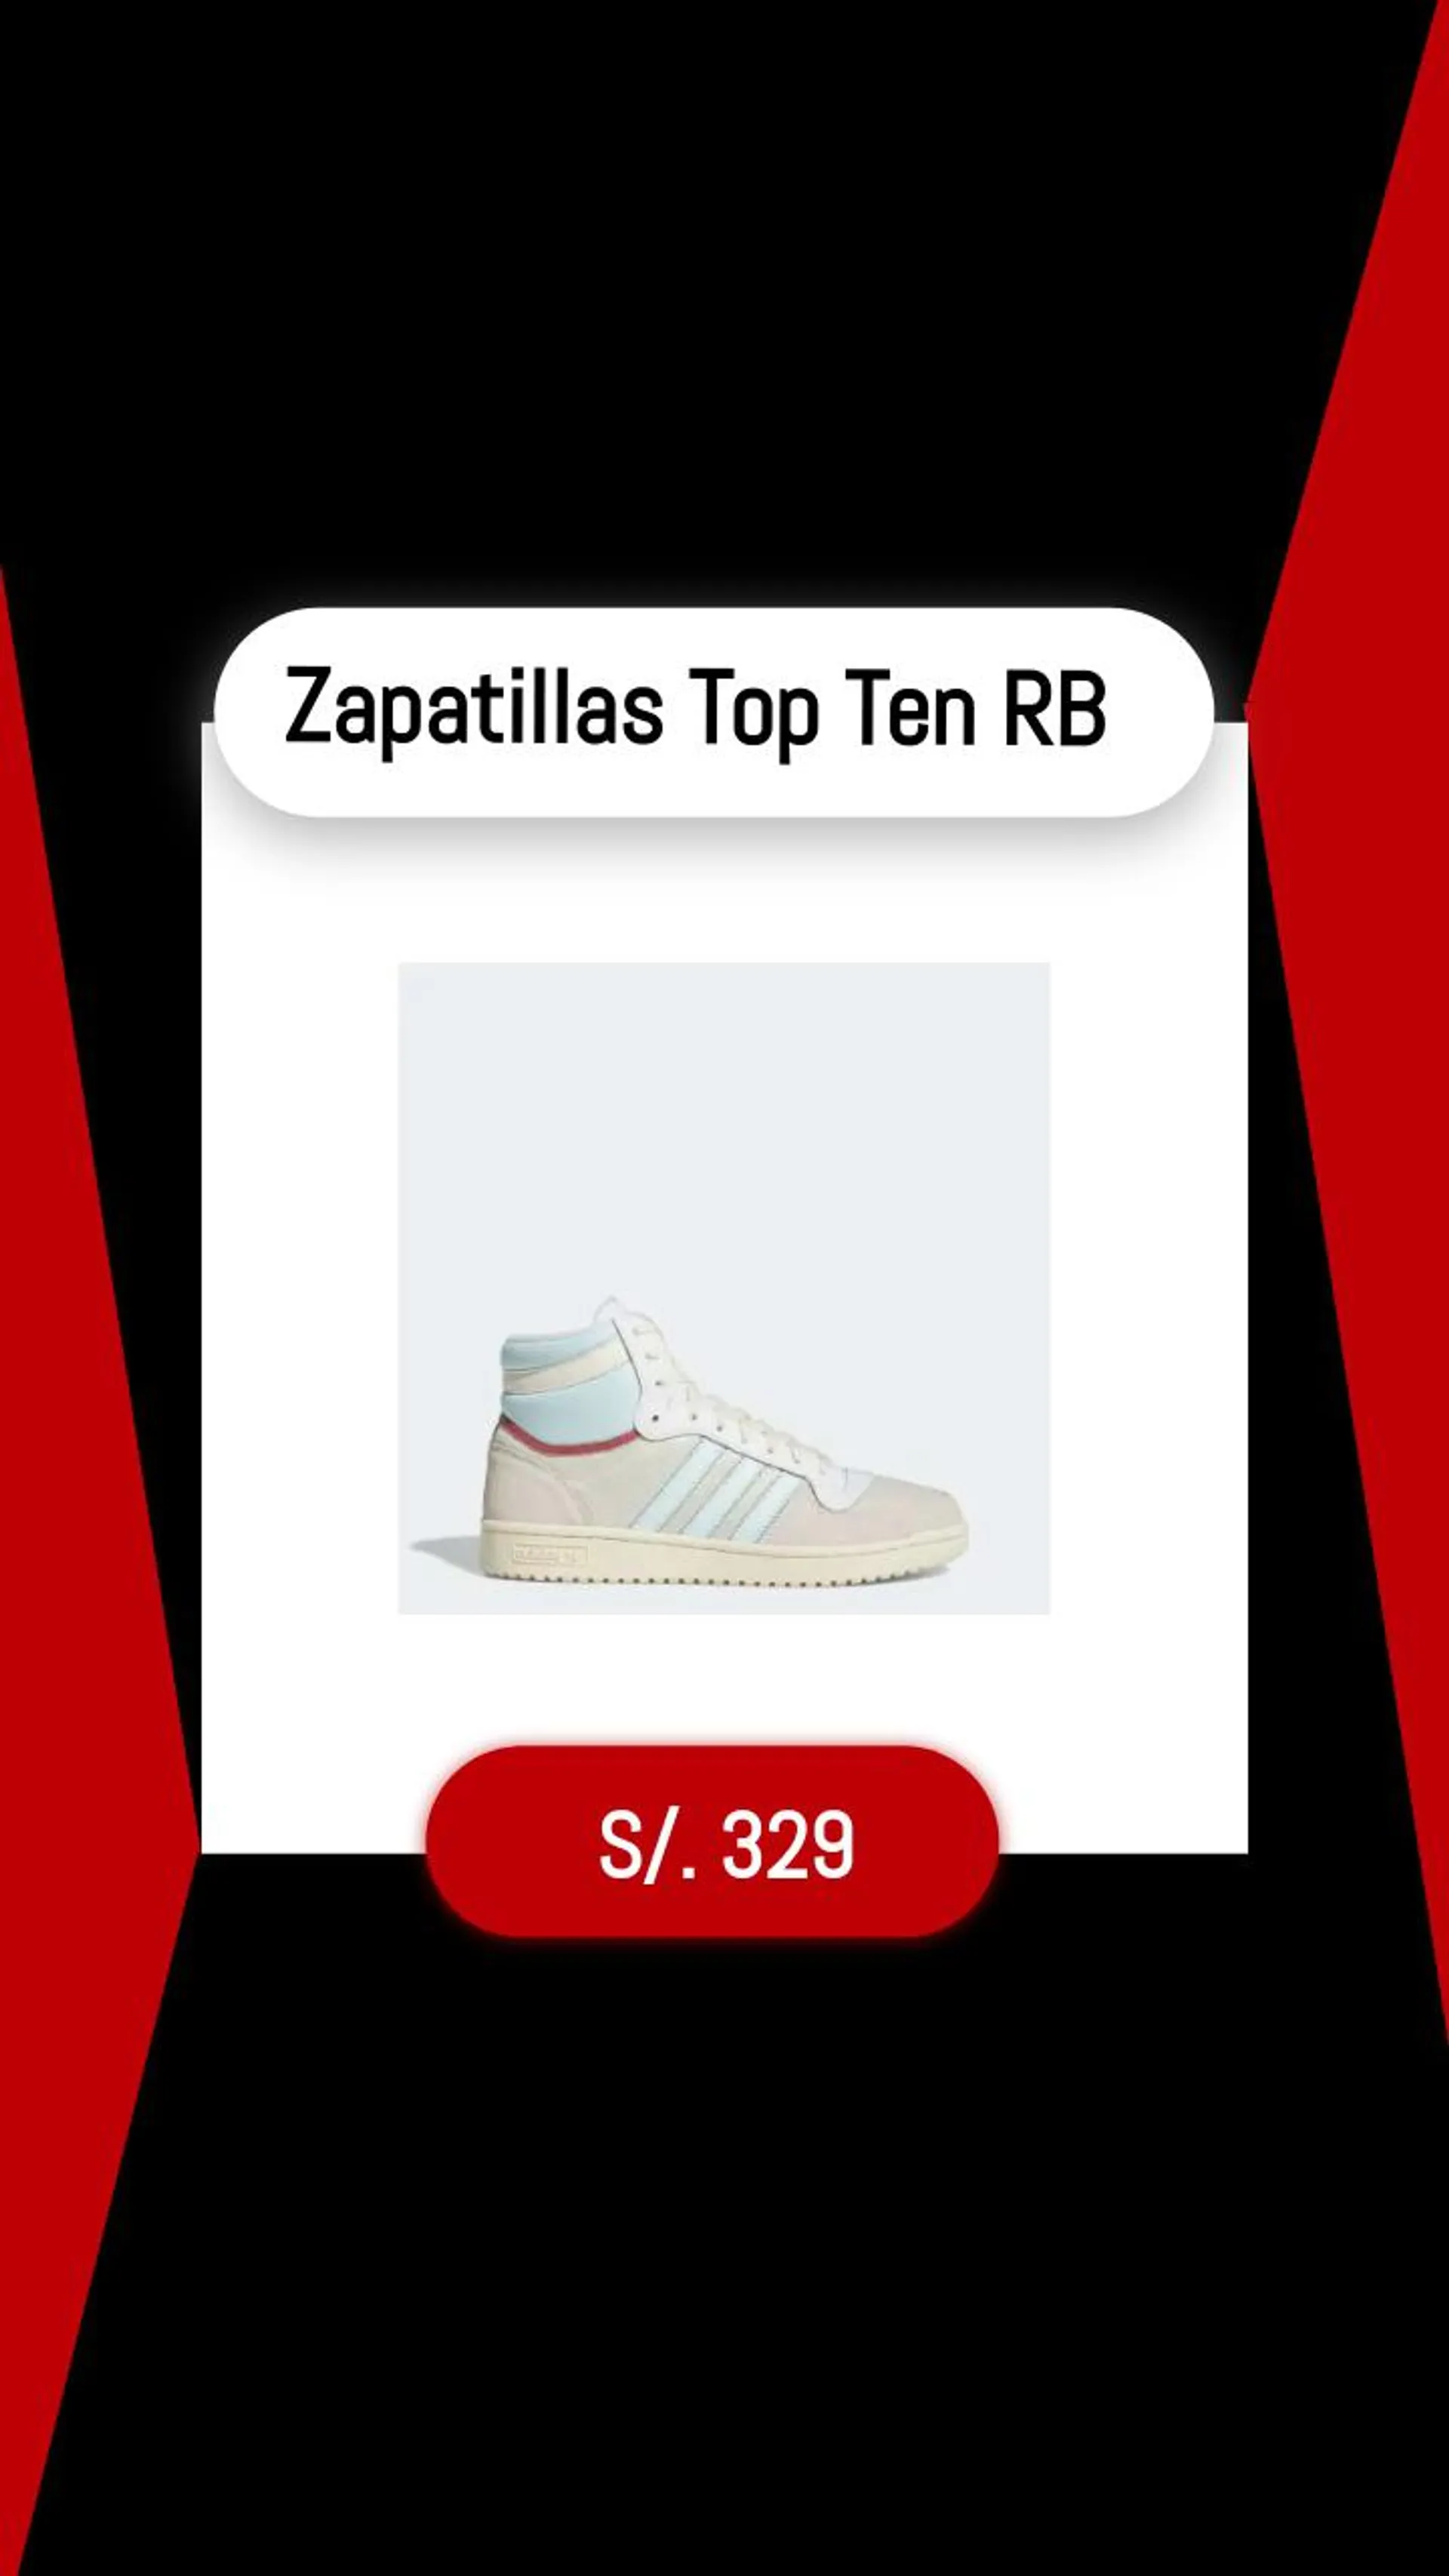 Zapatillas Top Ten RB